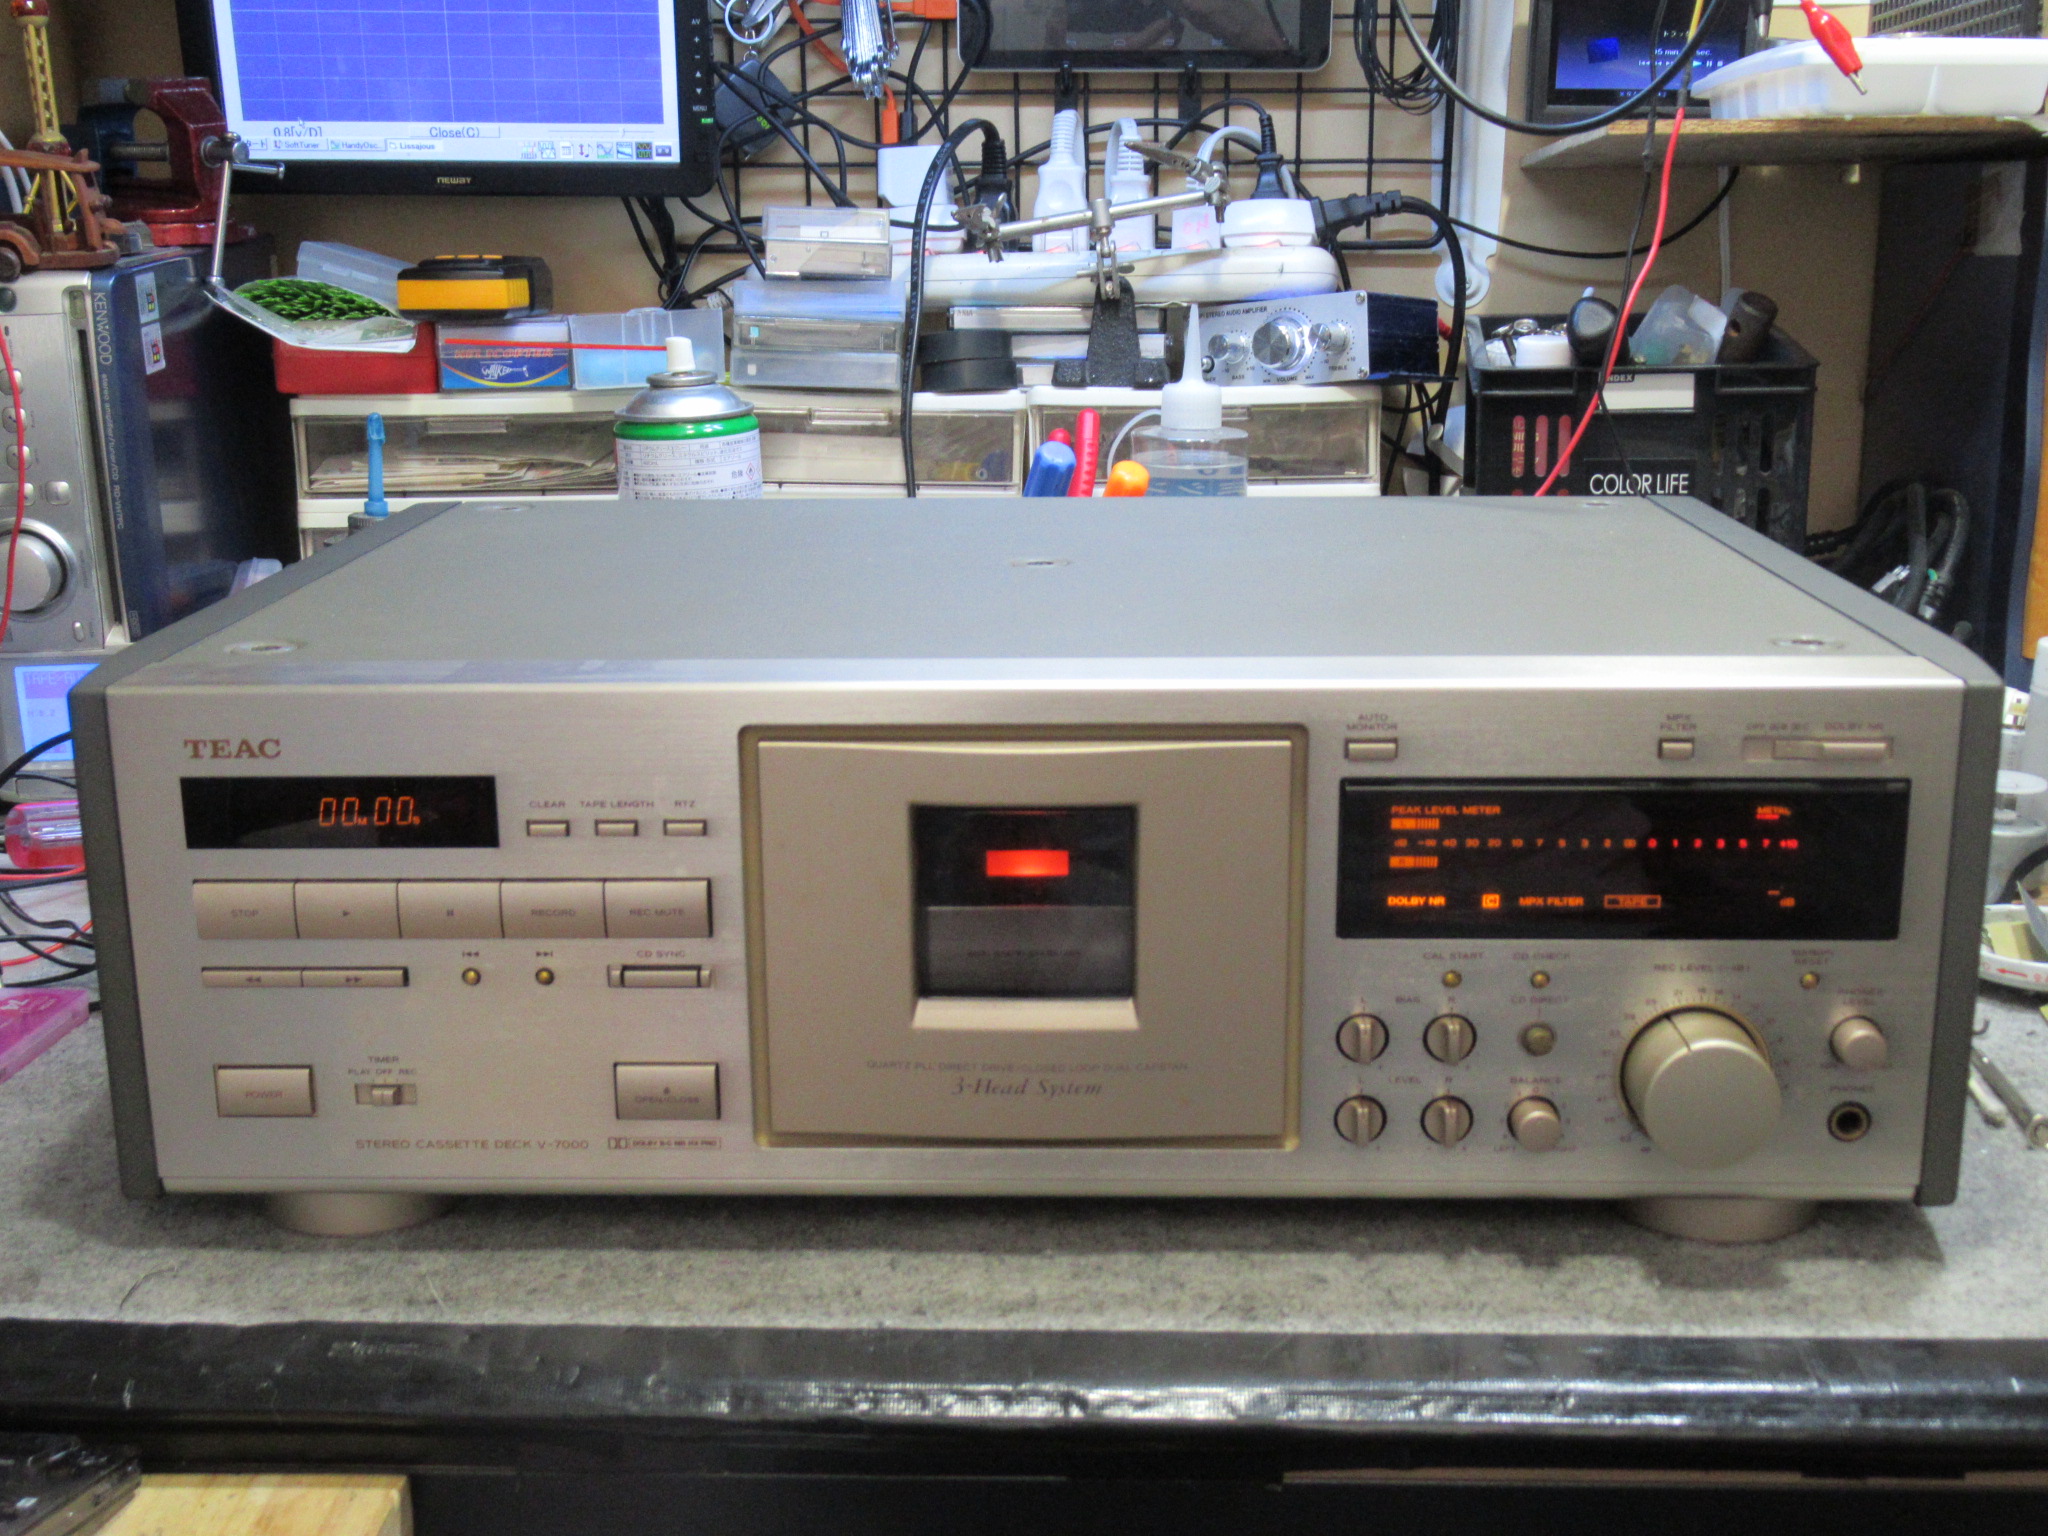 再生と録音確認ではテンポがTEAC　カセットデッキ　V-7000